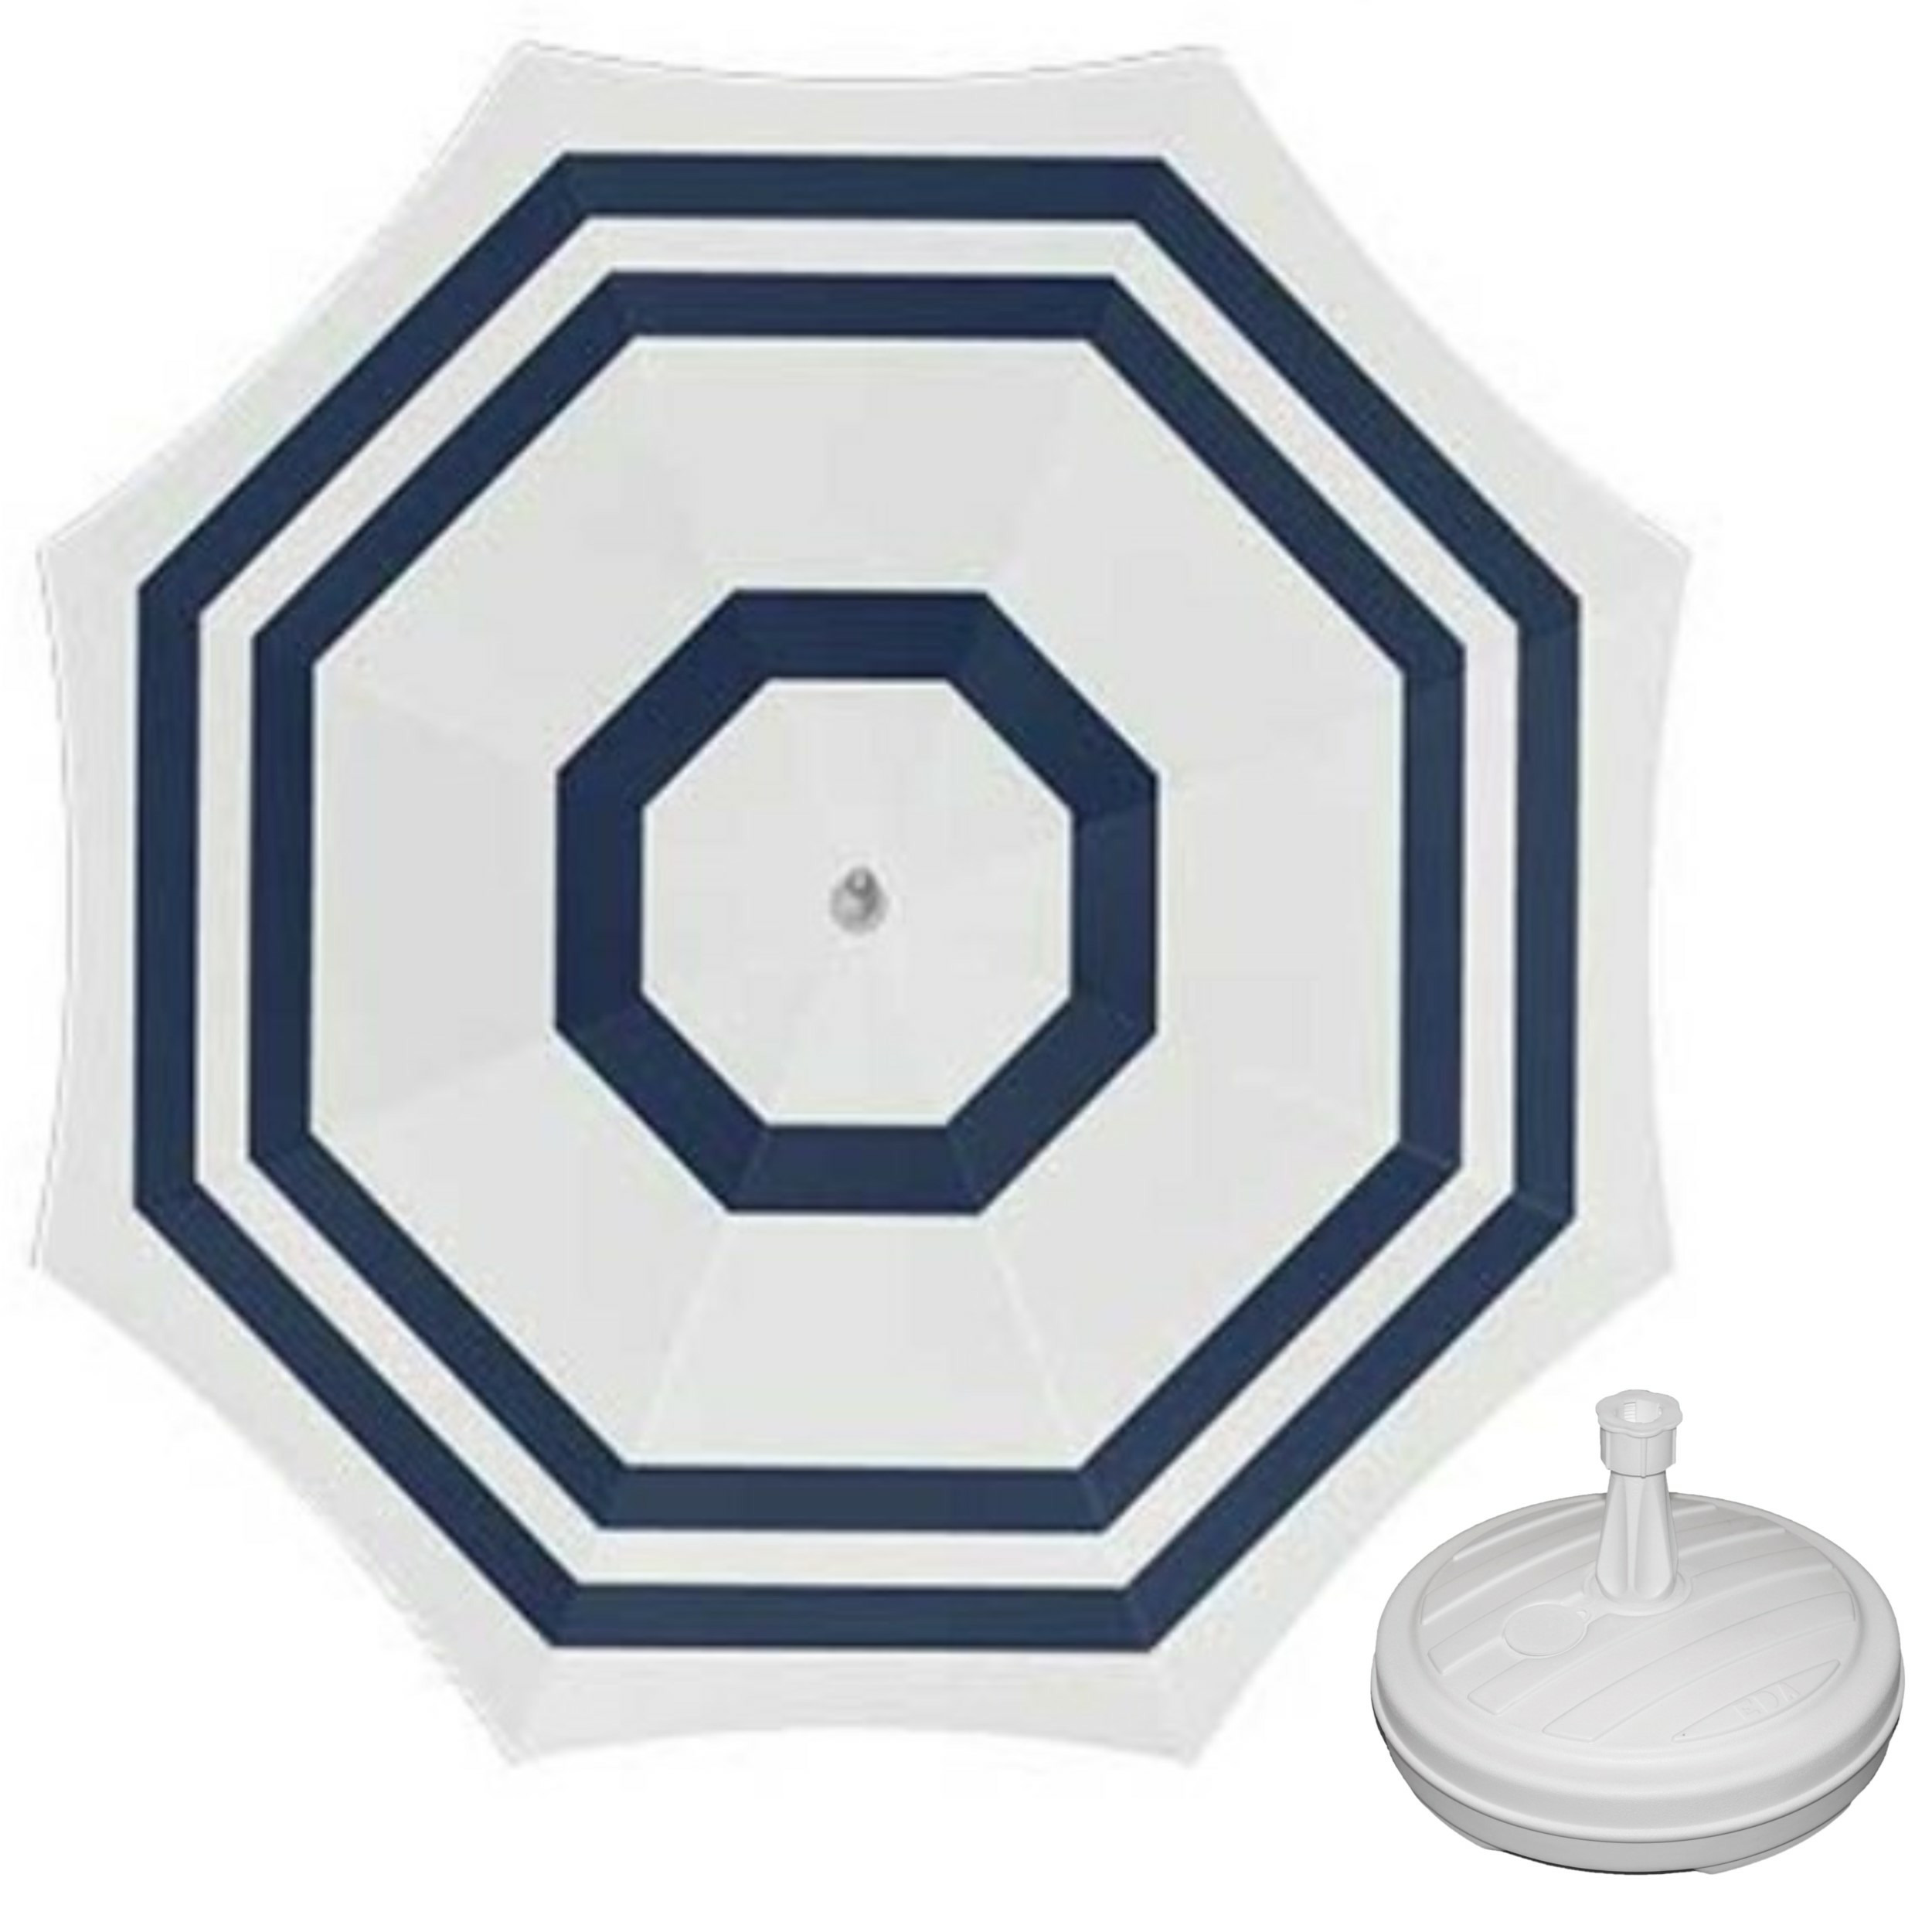 Parasol wit-blauw D180 cm incl. draagtas parasolvoet 42 cm